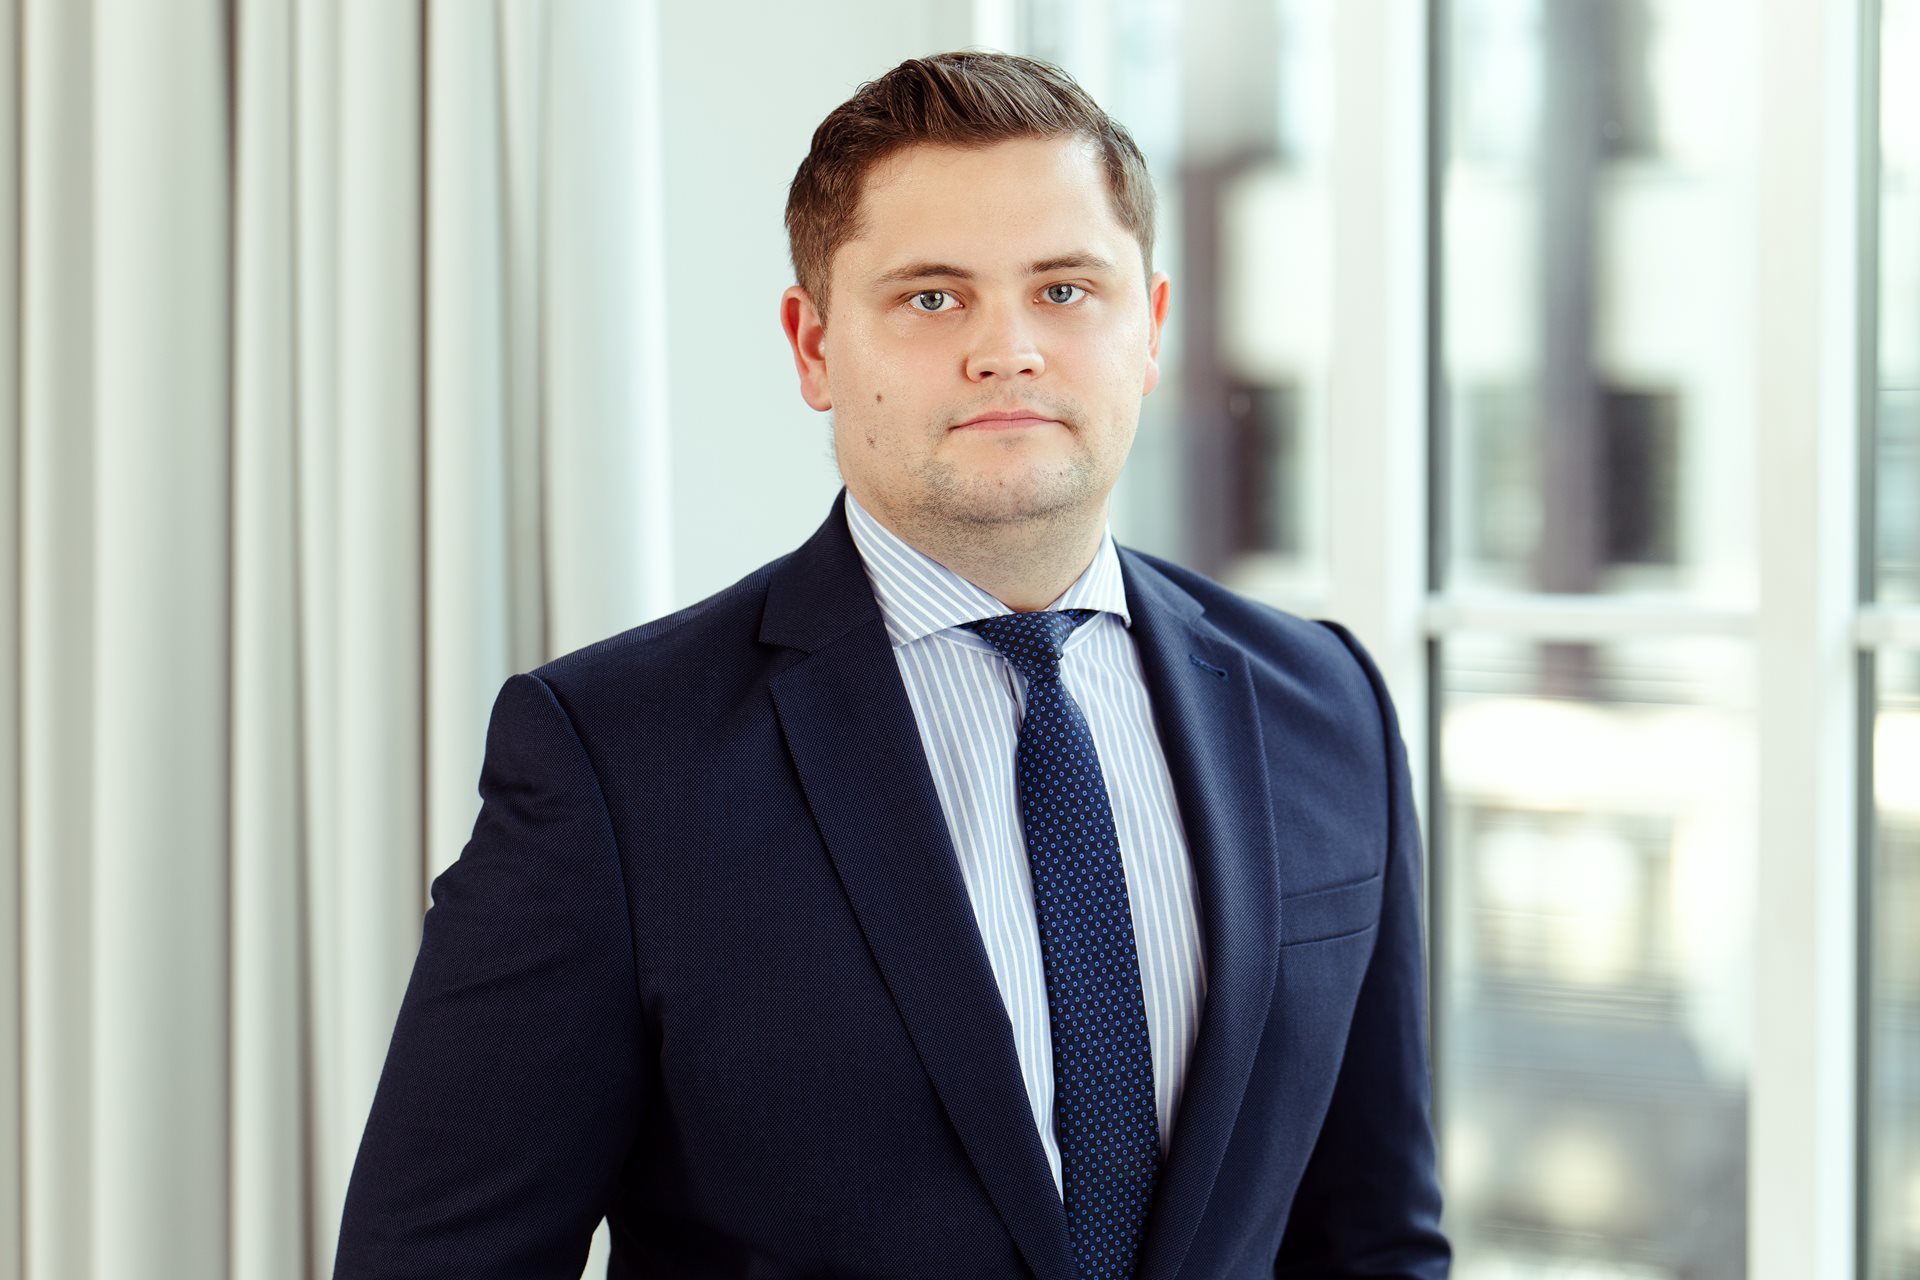 Reinis Jurgelāns, Audit and Assurance Assistant Project Manager